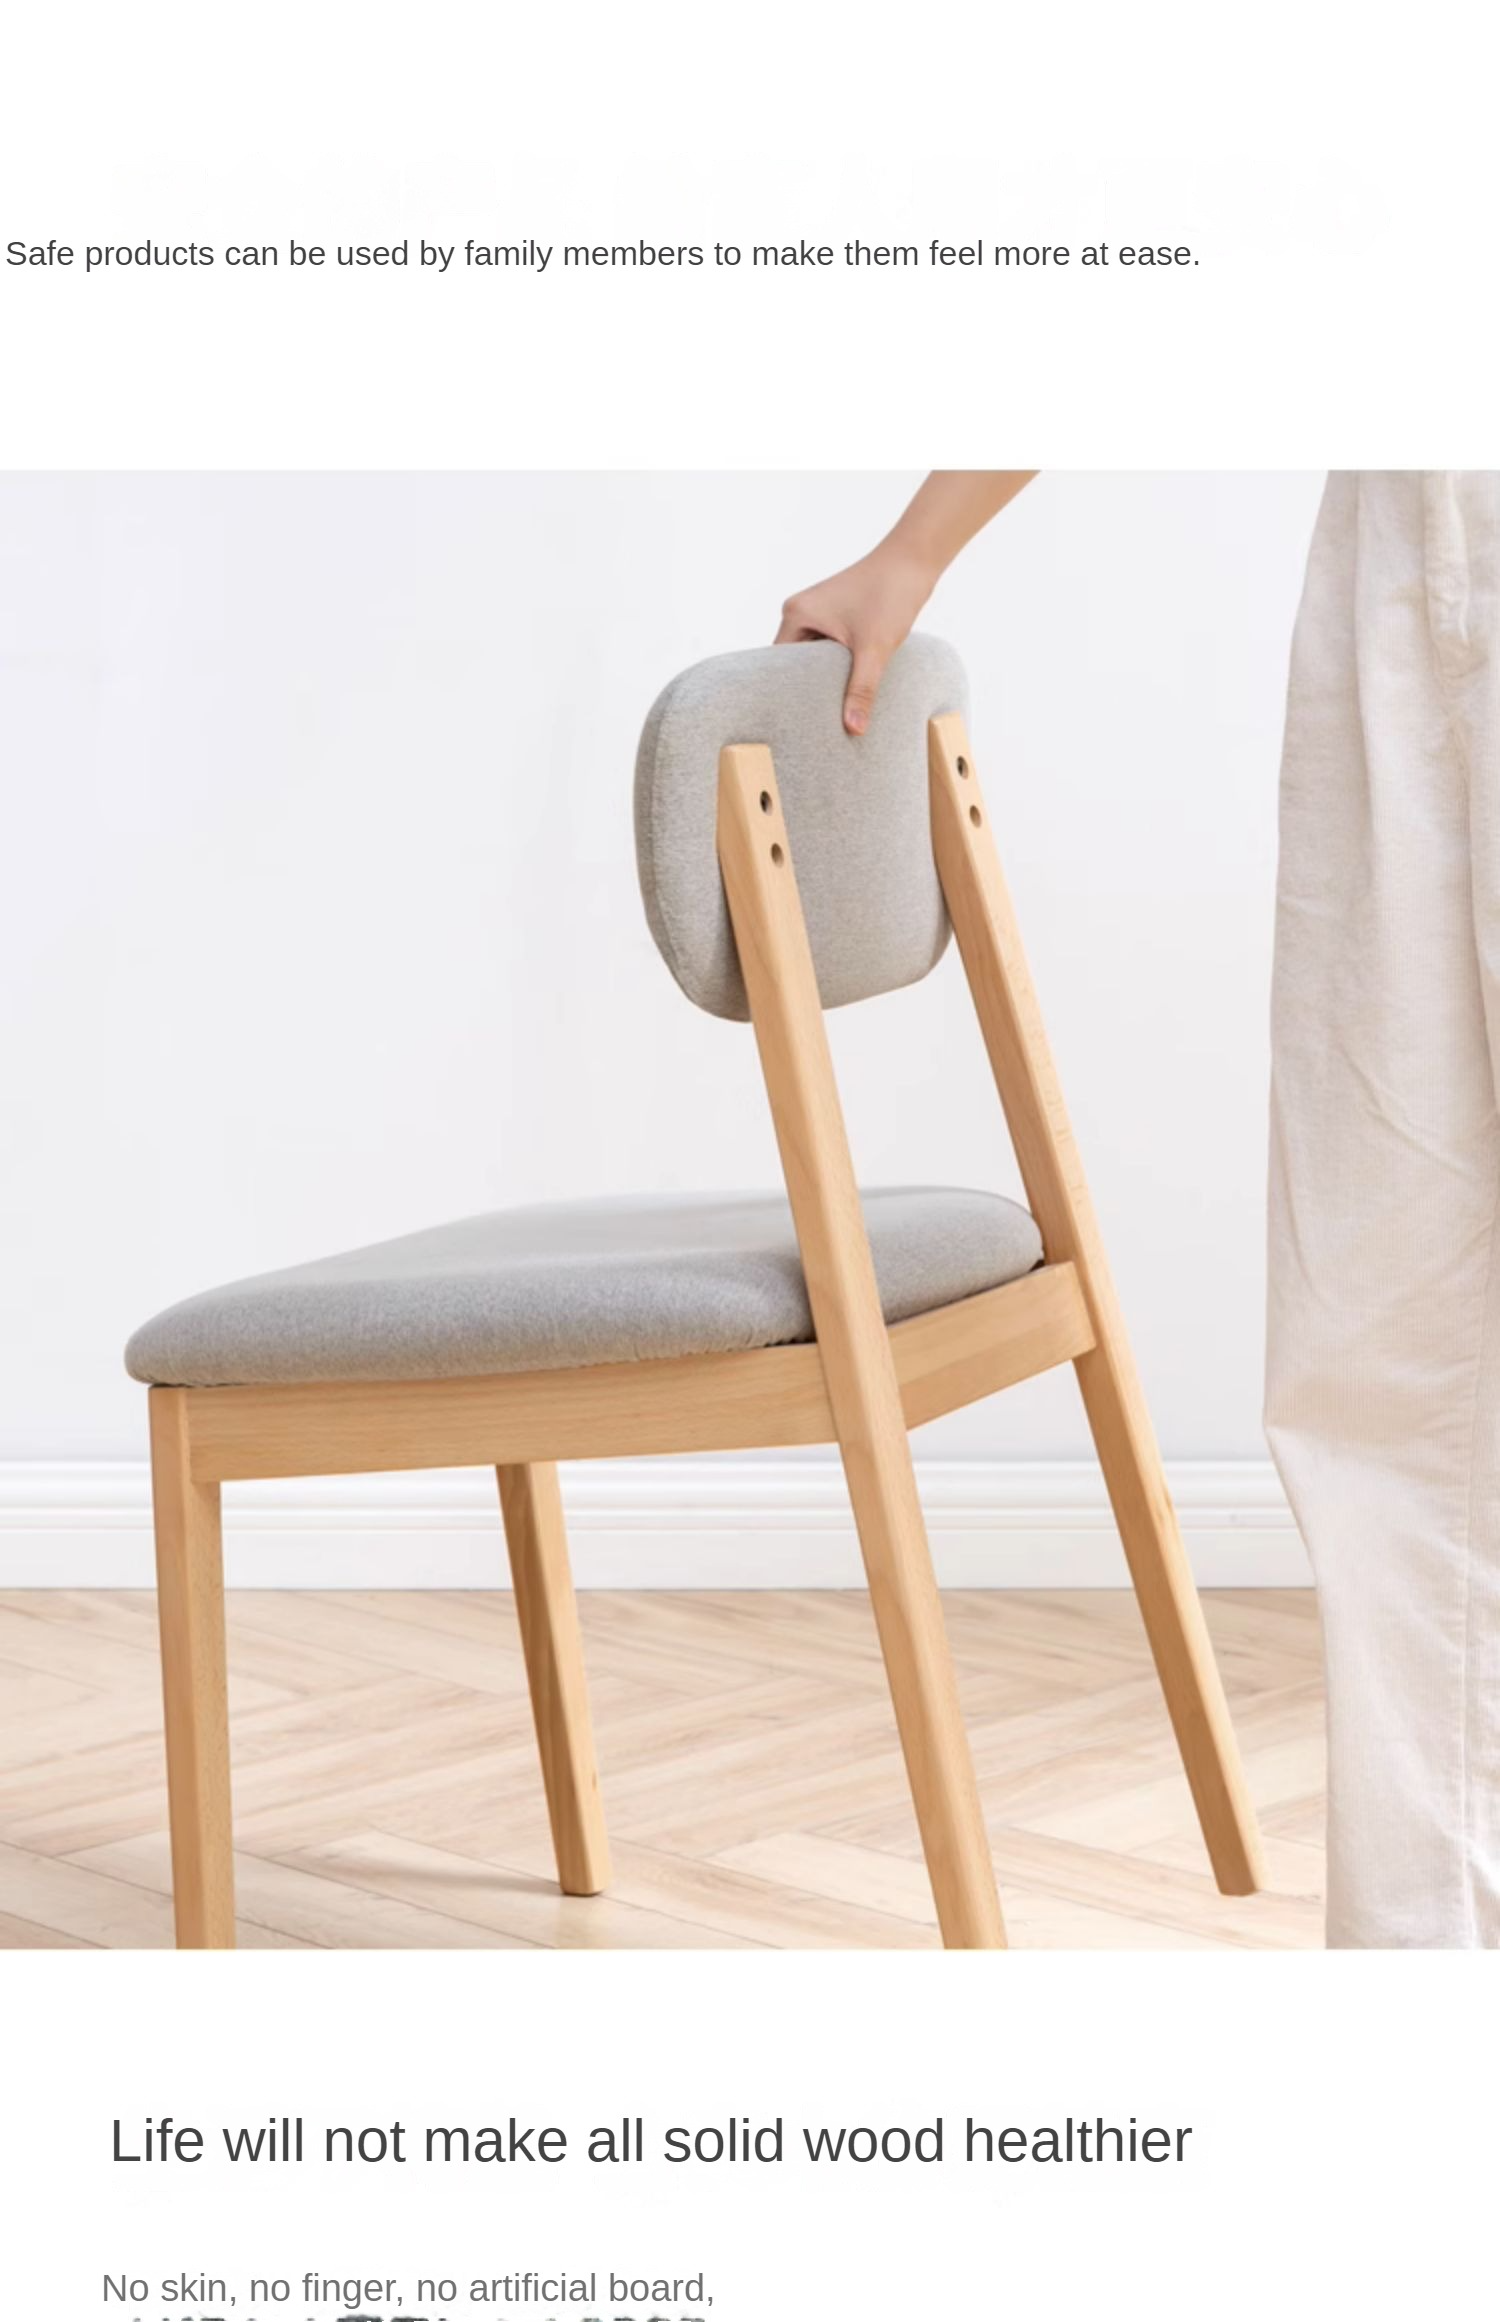 2 pcs Beech solid wood chair modern "